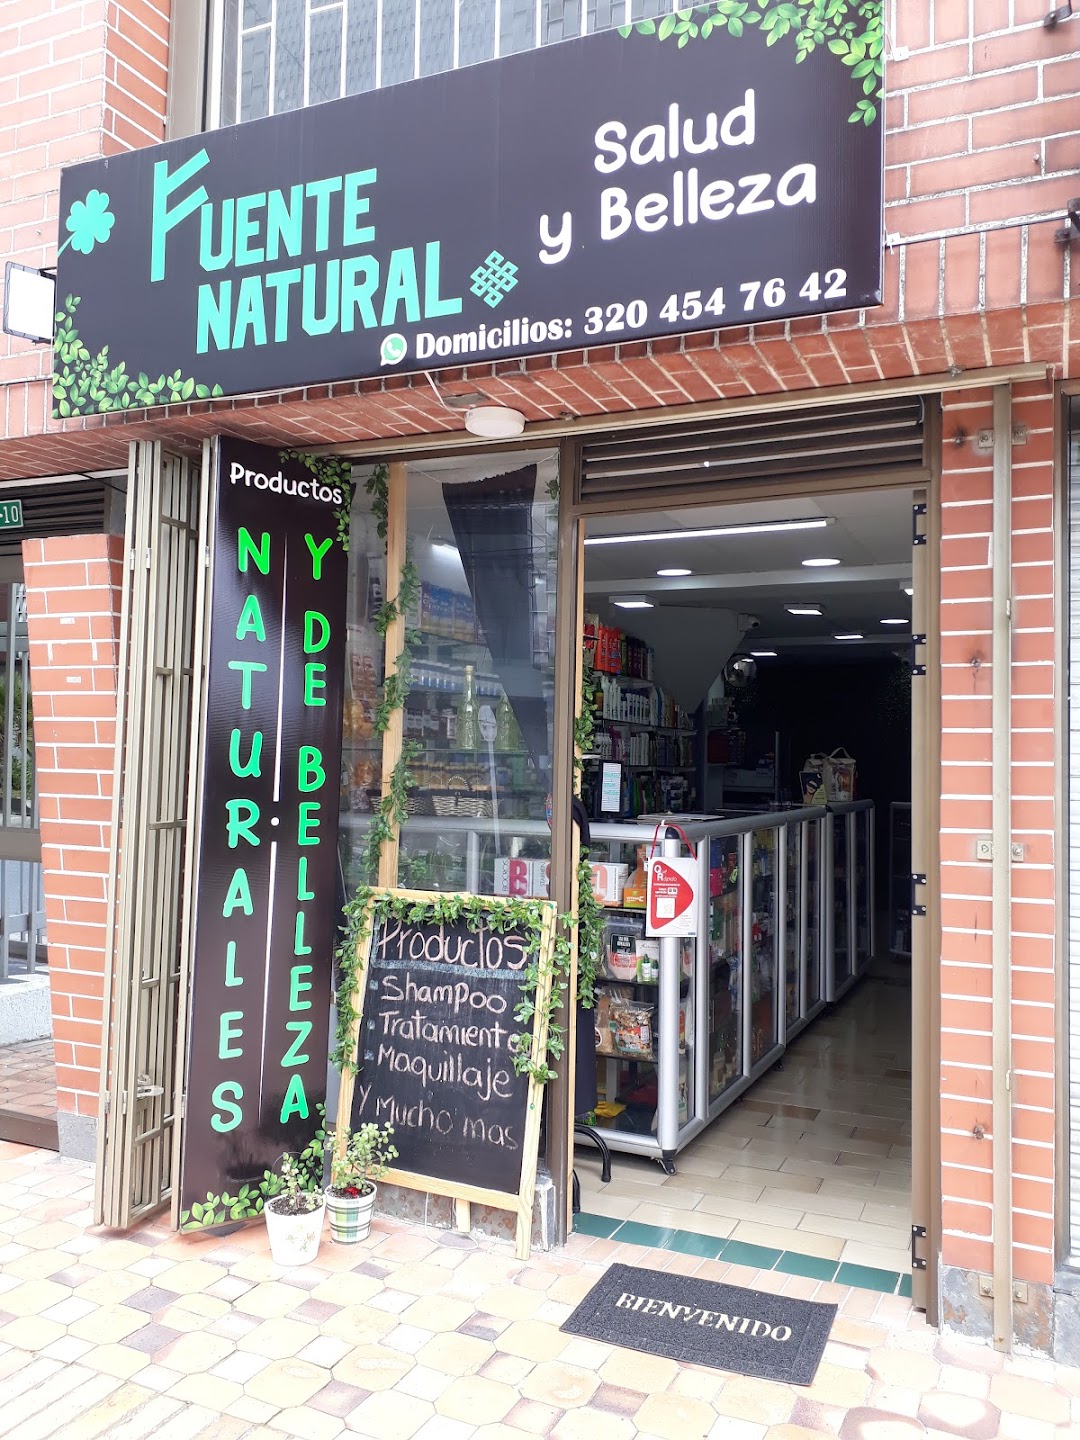 Tienda Naturista Fuente Natural Salud Y Belleza Bogota